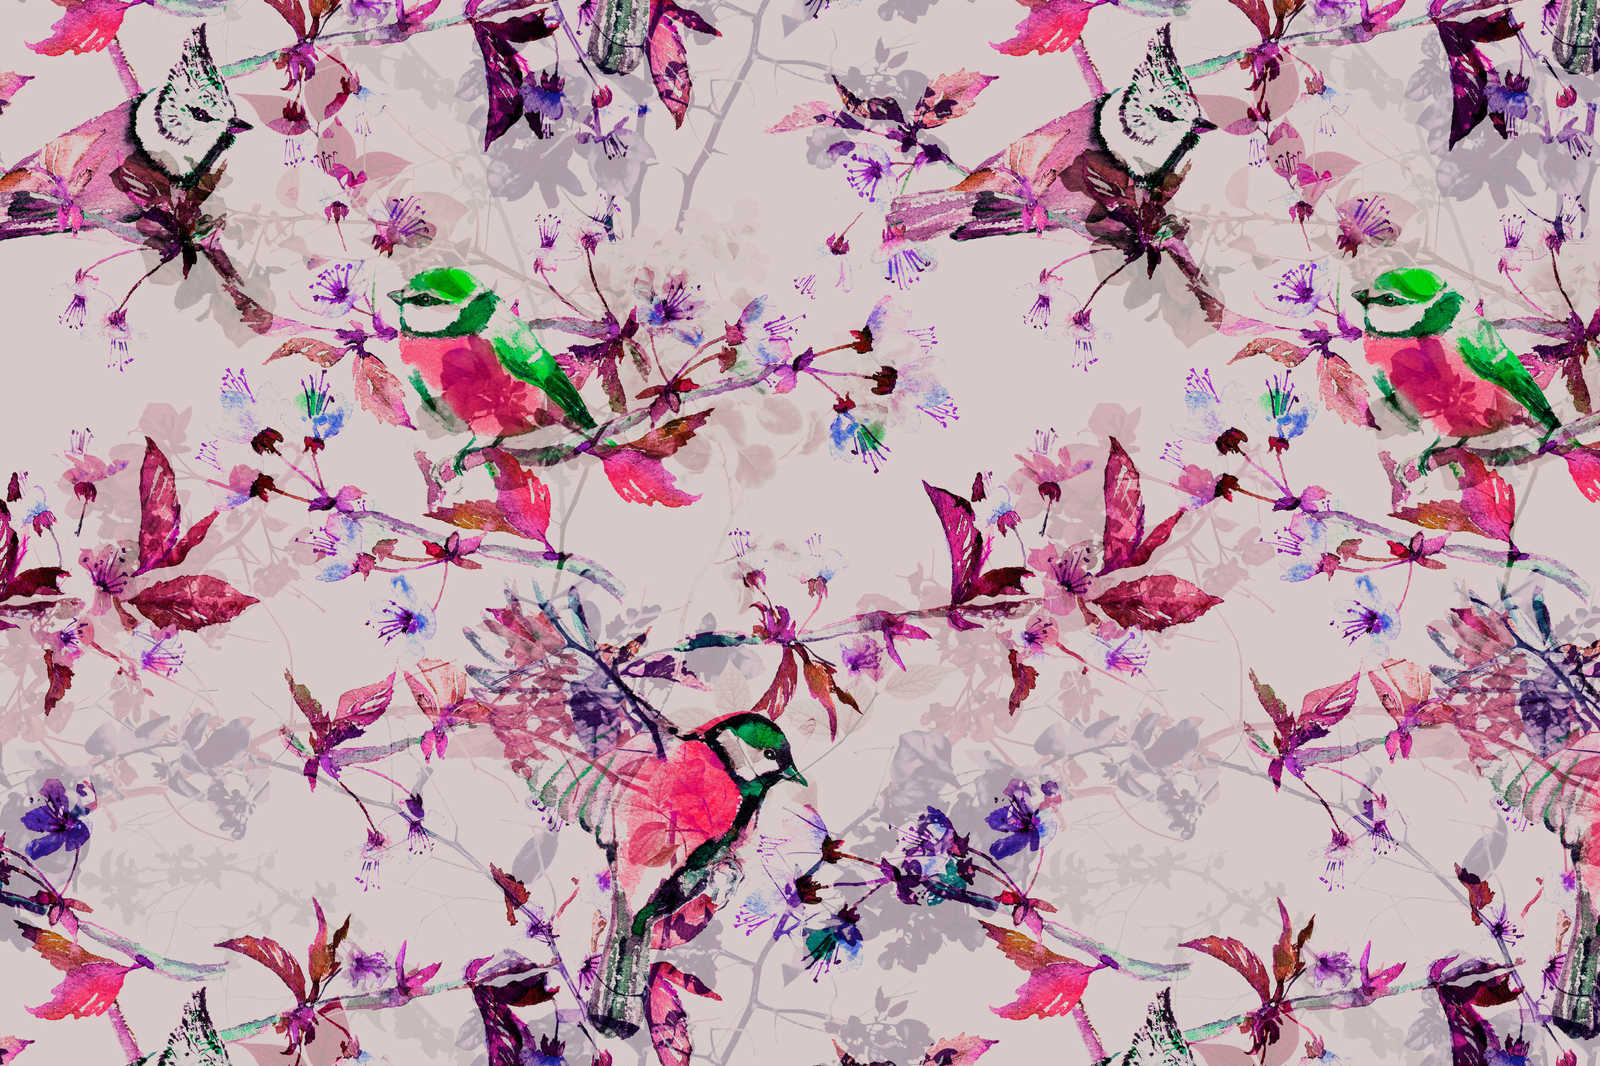             Oiseaux toile style collage | rose, bleu - 0,90 m x 0,60 m
        